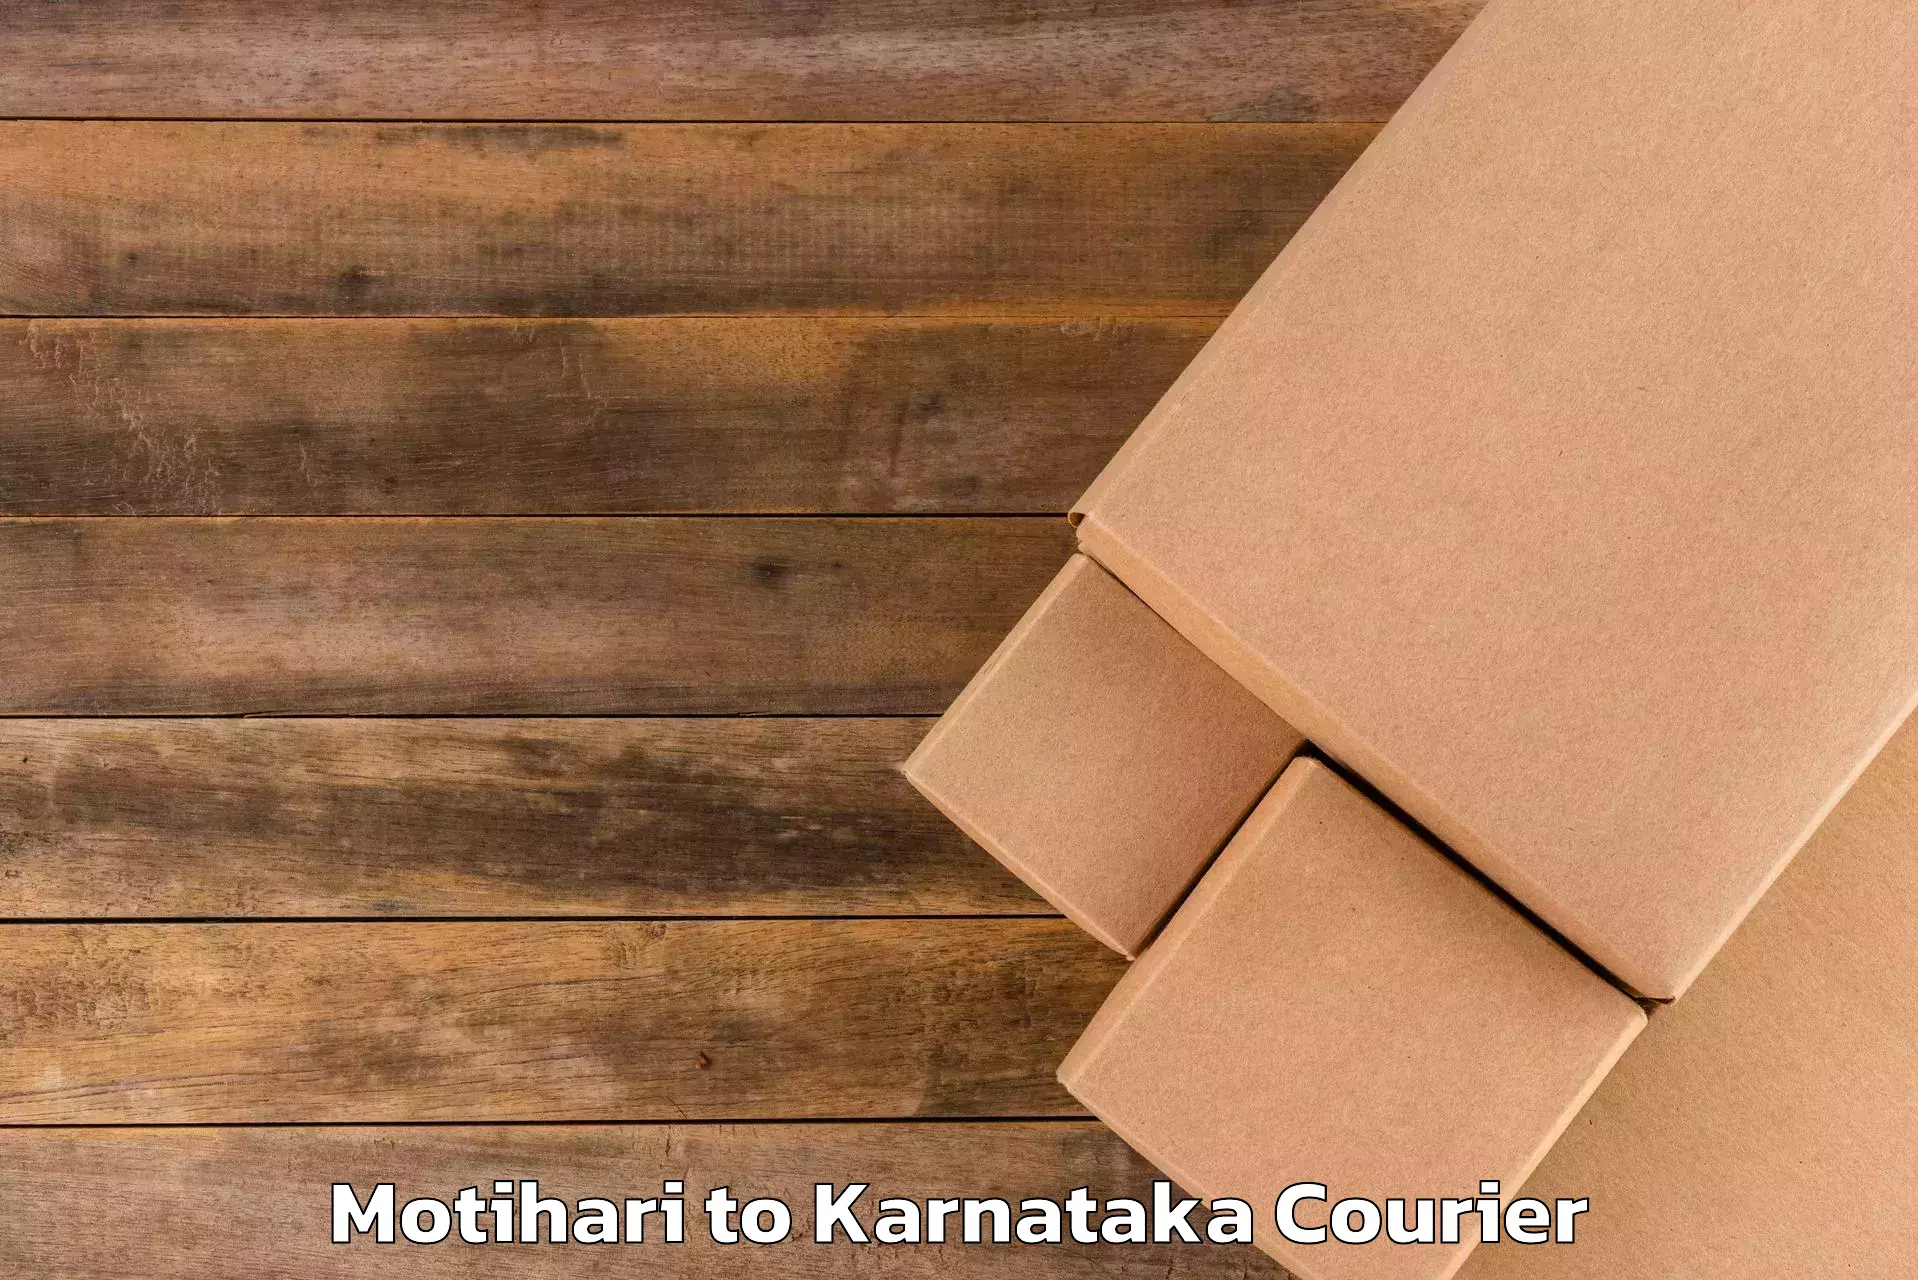 Scheduled baggage courier Motihari to Karnataka